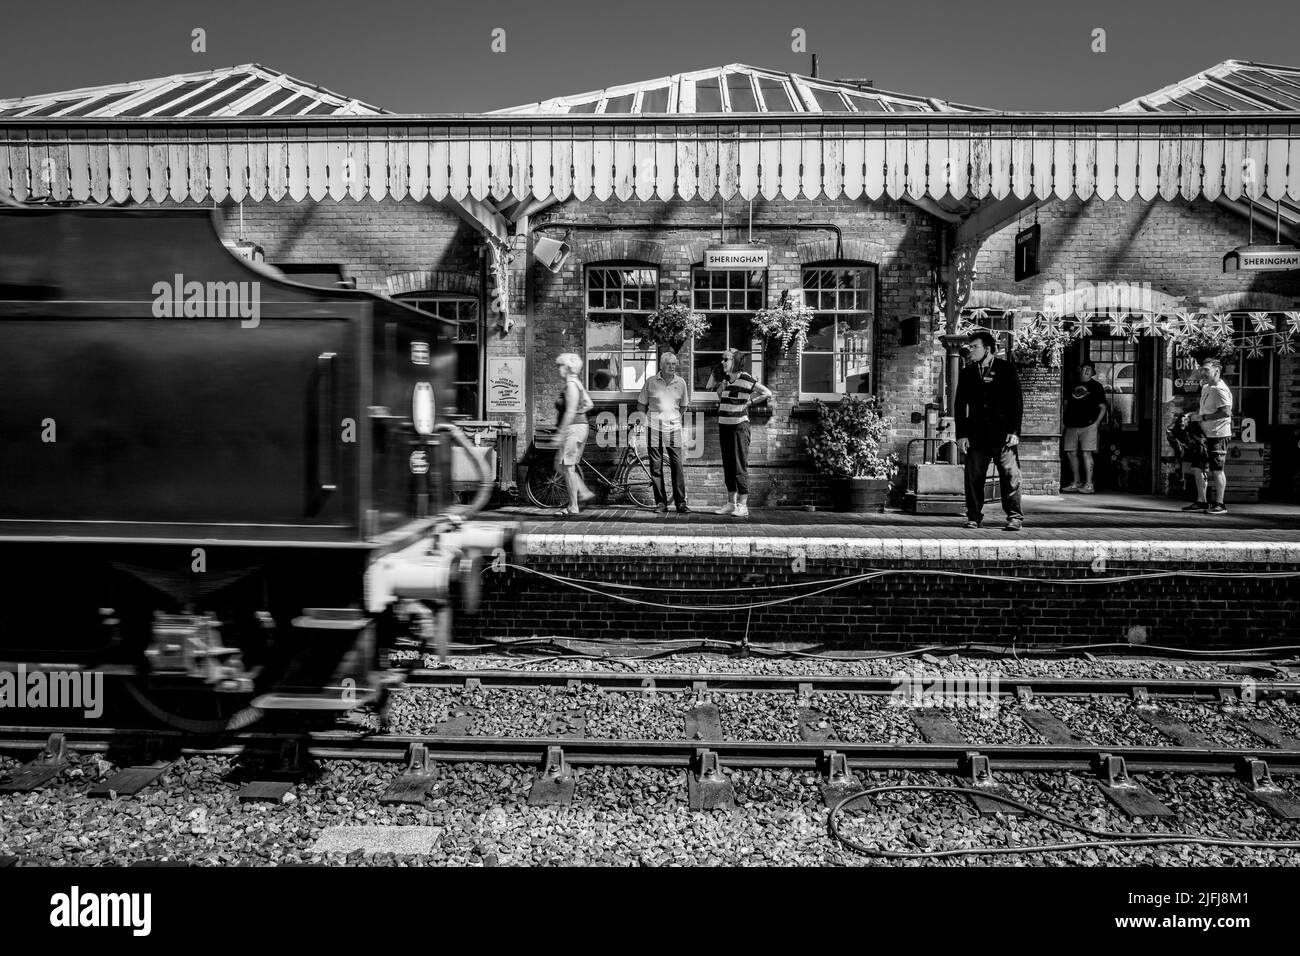 Pasajeros y turistas en la plataforma en la histórica estación ferroviaria de Sheringham que es parte de la línea ferroviaria North Norfolk. Foto de stock